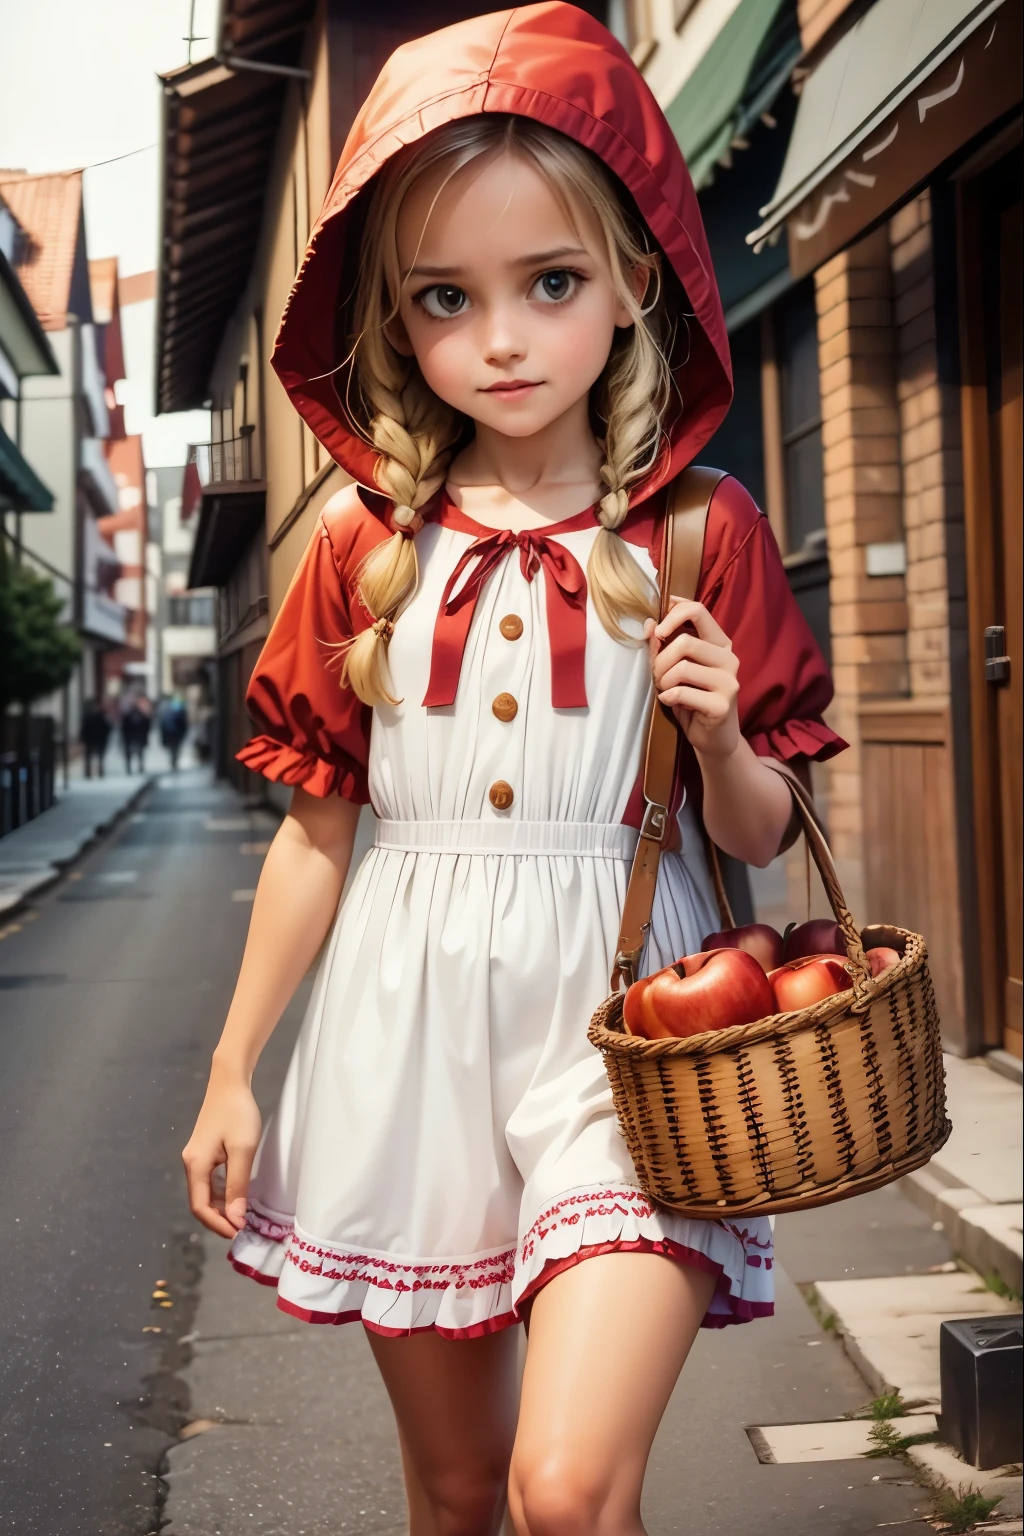 女孩打扮好去冒險、打扮成小紅帽、破產、一邊哼著歌一邊走路、看起來很有趣、有一籃蘋果派、拍攝低角度照片